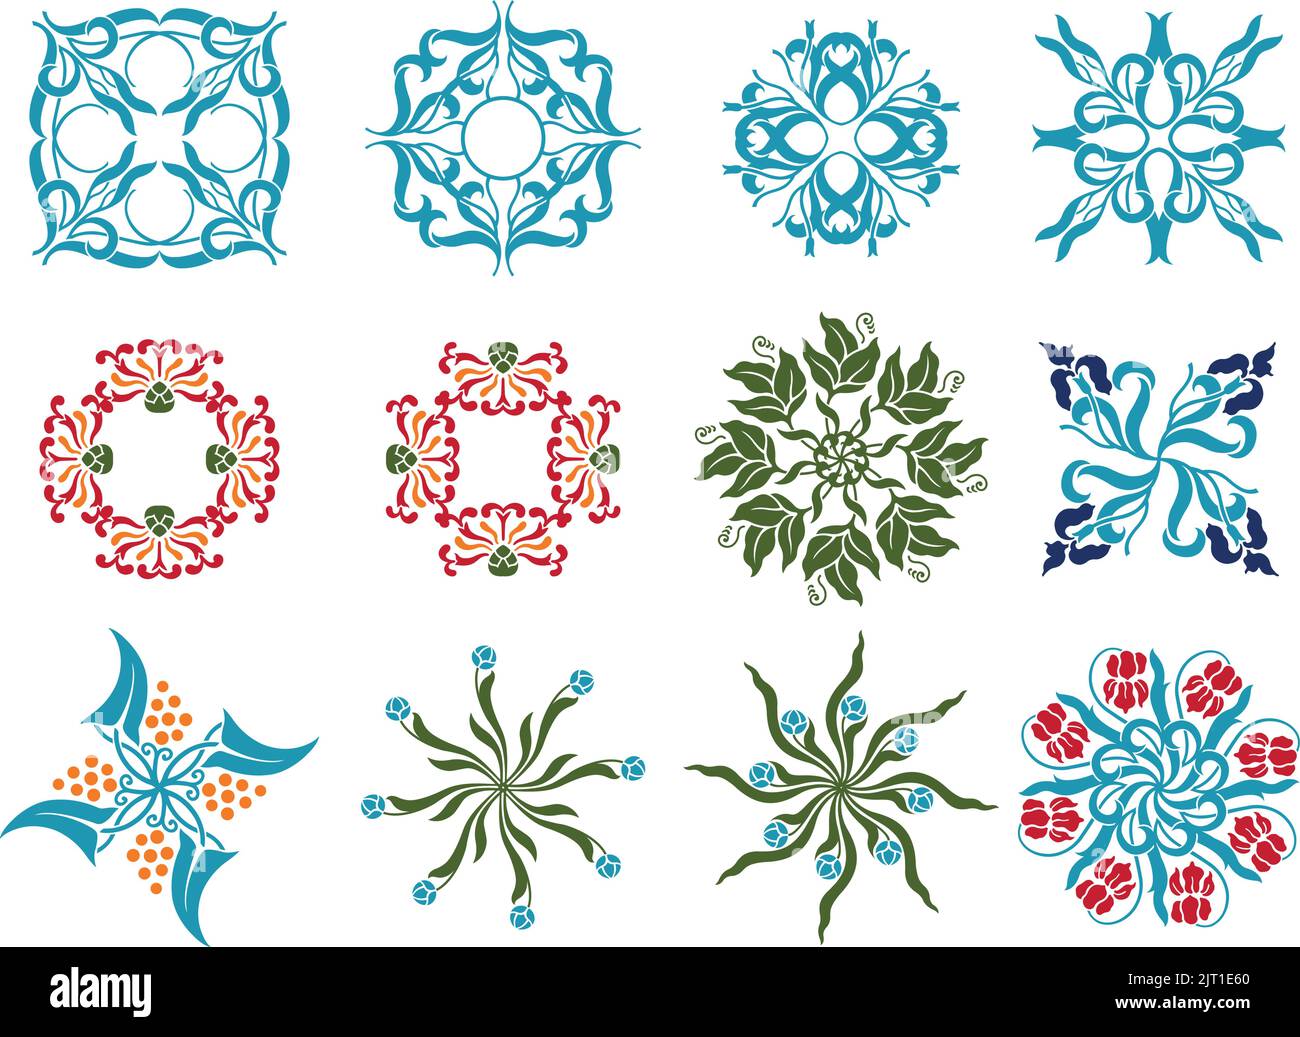 Una serie di icone decorative vettoriali d'epoca floreali primaverili. Illustrazione Vettoriale